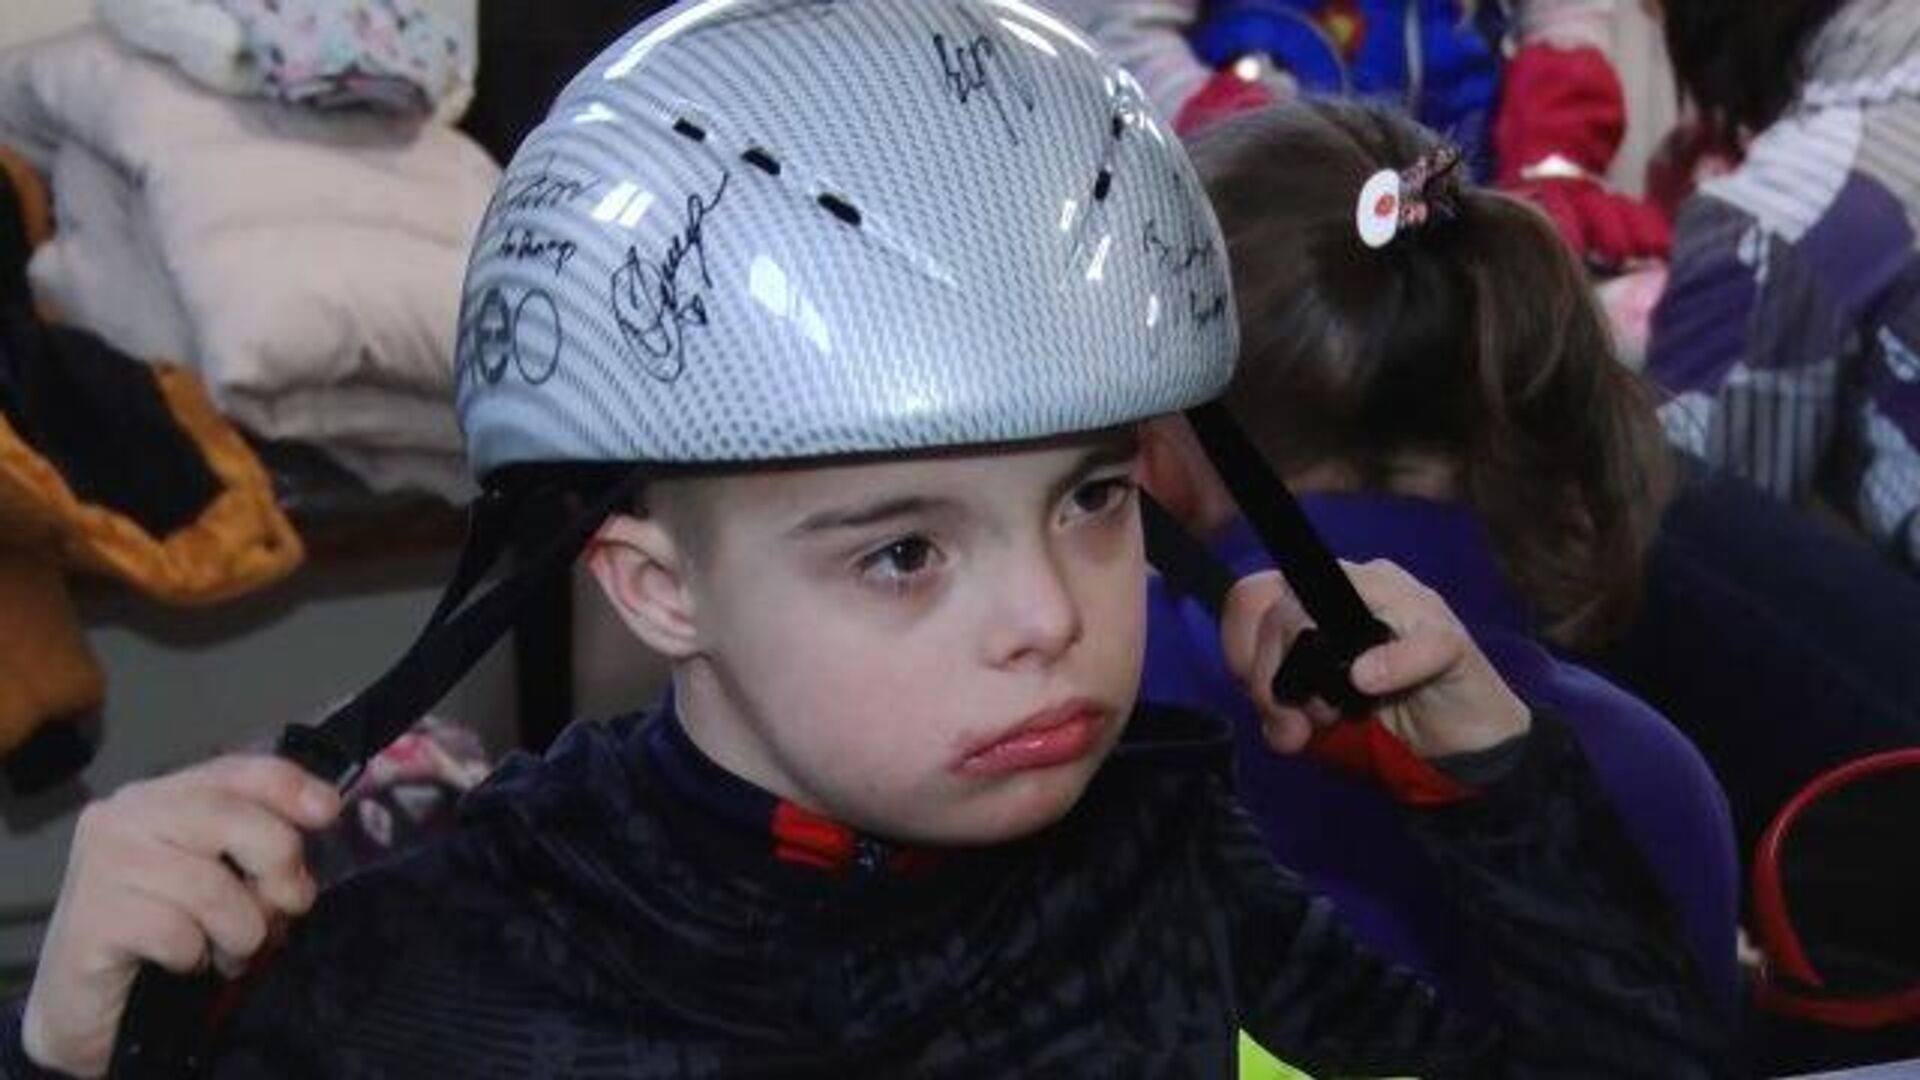 Всему вопреки: 10-летний мальчик с синдромом Дауна освоил шорт-трек - РИА Новости, 1920, 09.12.2019